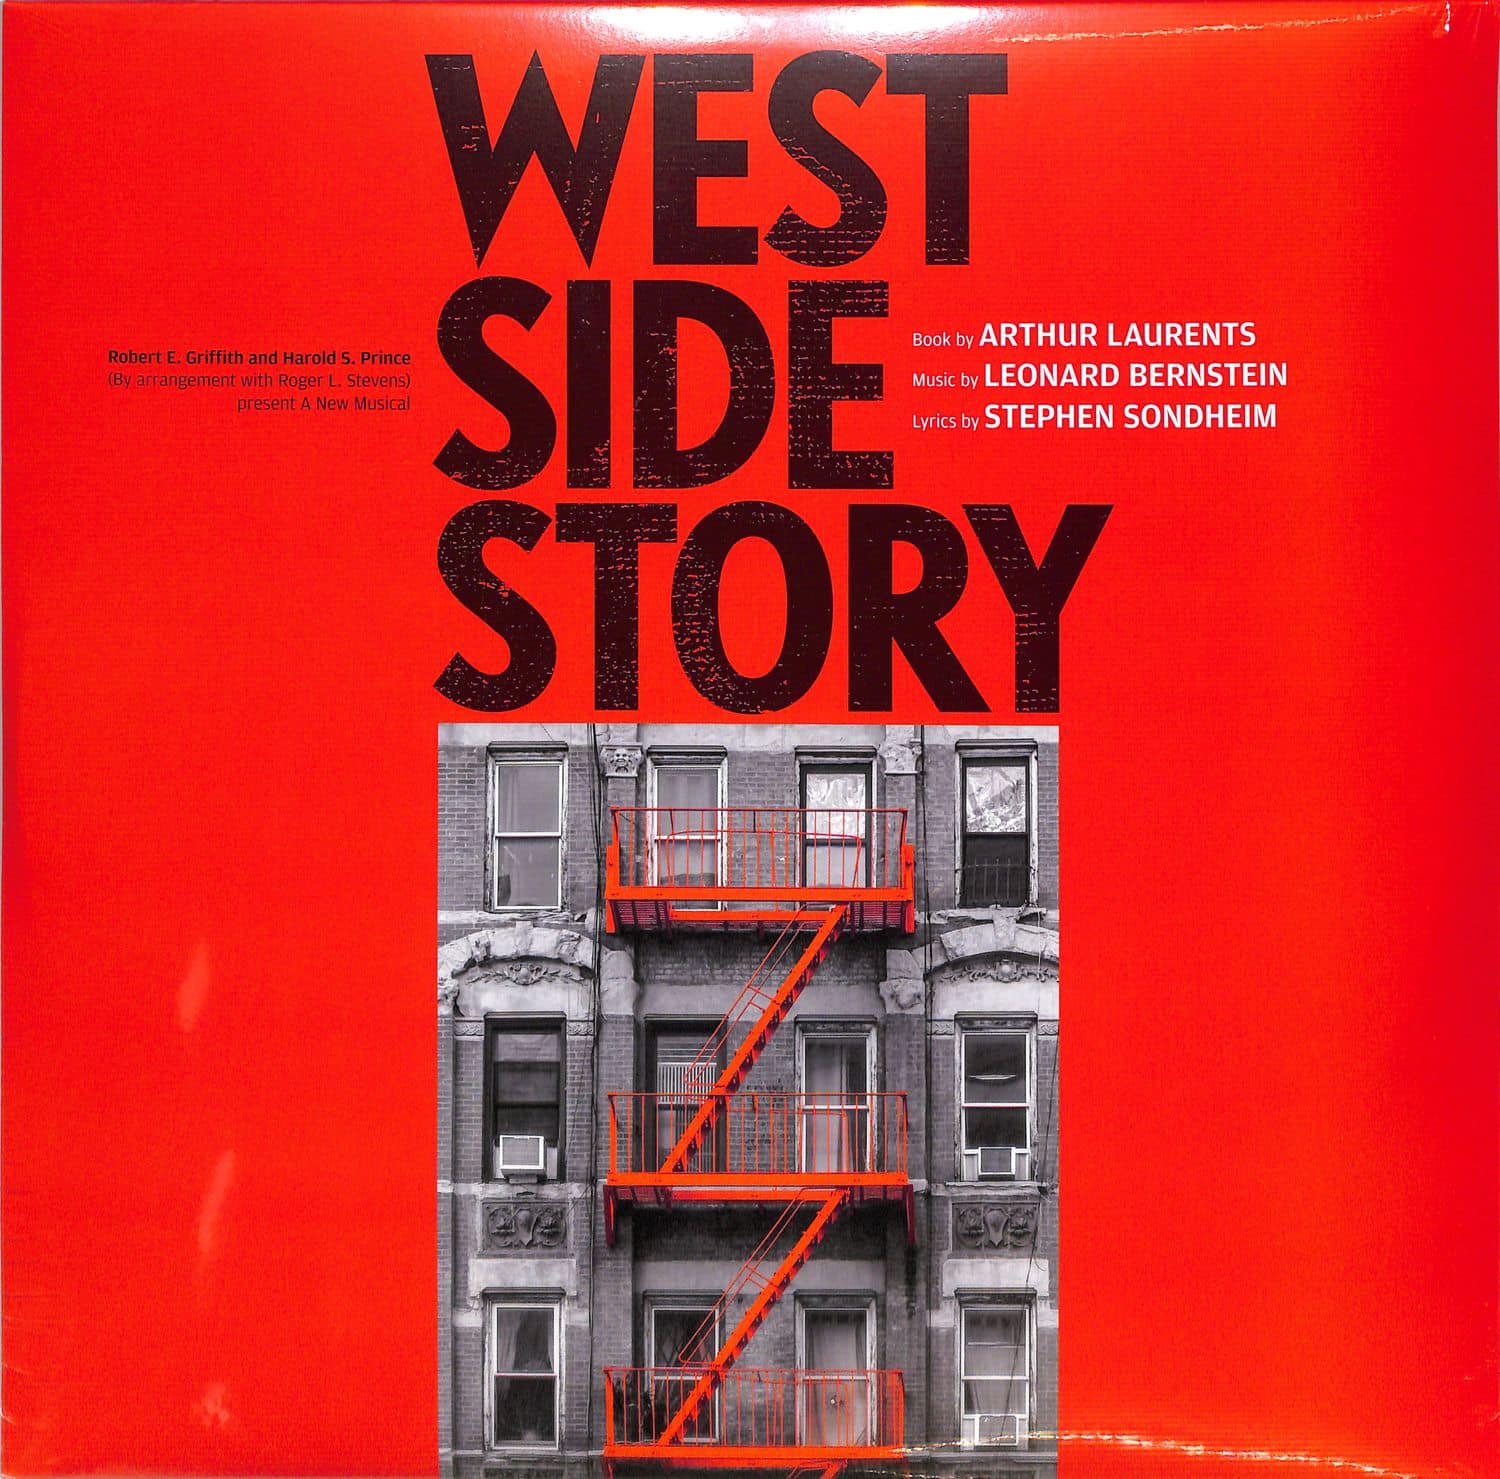 Leonard Bernstein / Stephen Sondheim - WEST SIDE STORY 